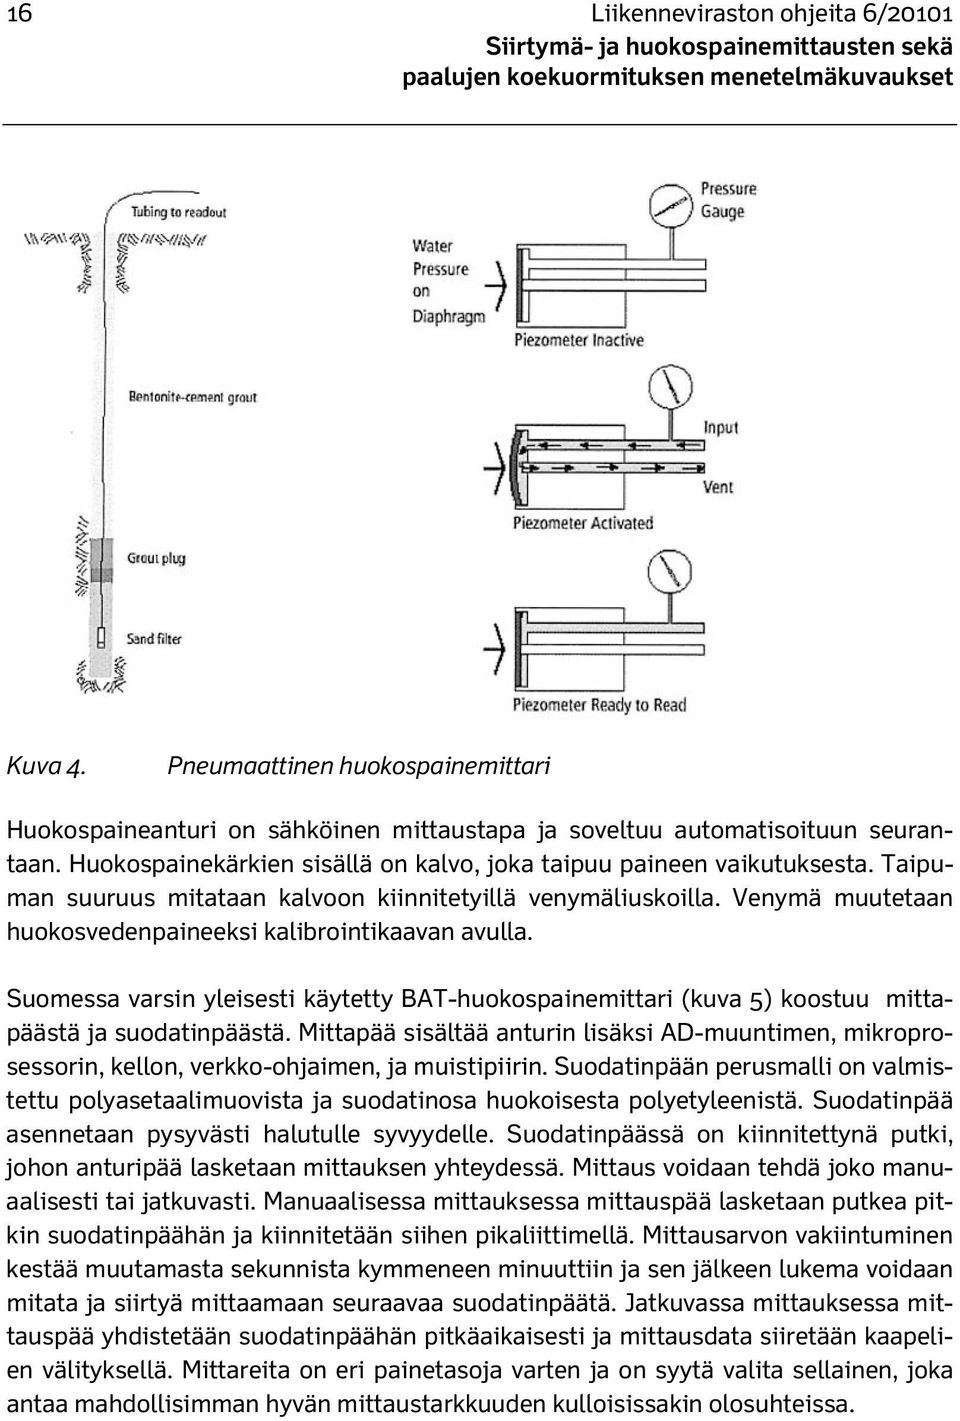 Venymä muutetaan huokosvedenpaineeksi kalibrointikaavan avulla. Suomessa varsin yleisesti käytetty BAT-huokospainemittari (kuva 5) koostuu mittapäästä ja suodatinpäästä.